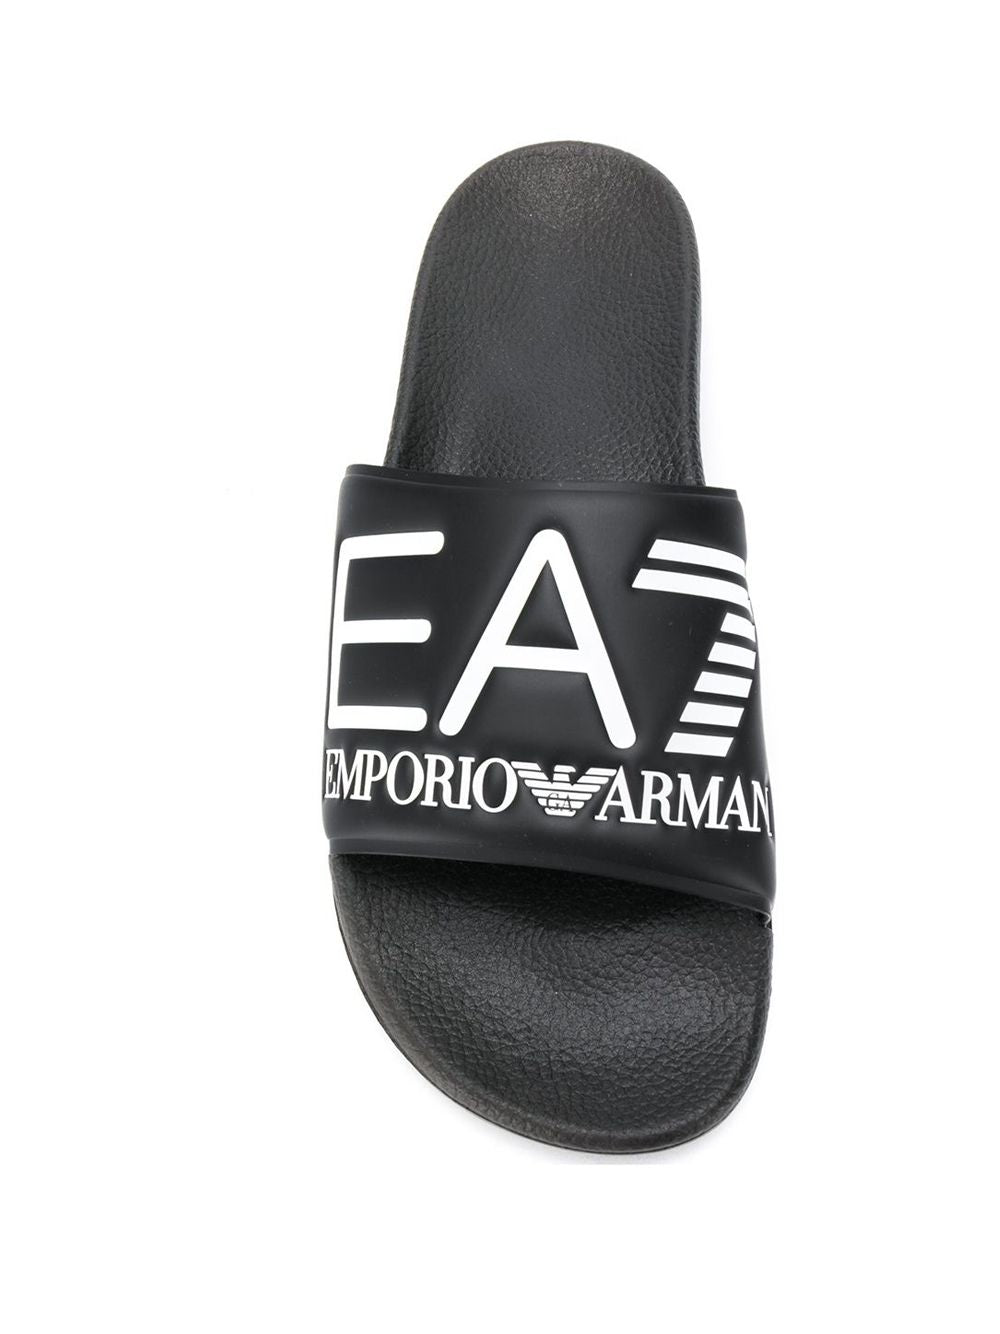 Ea7 Sandals Black